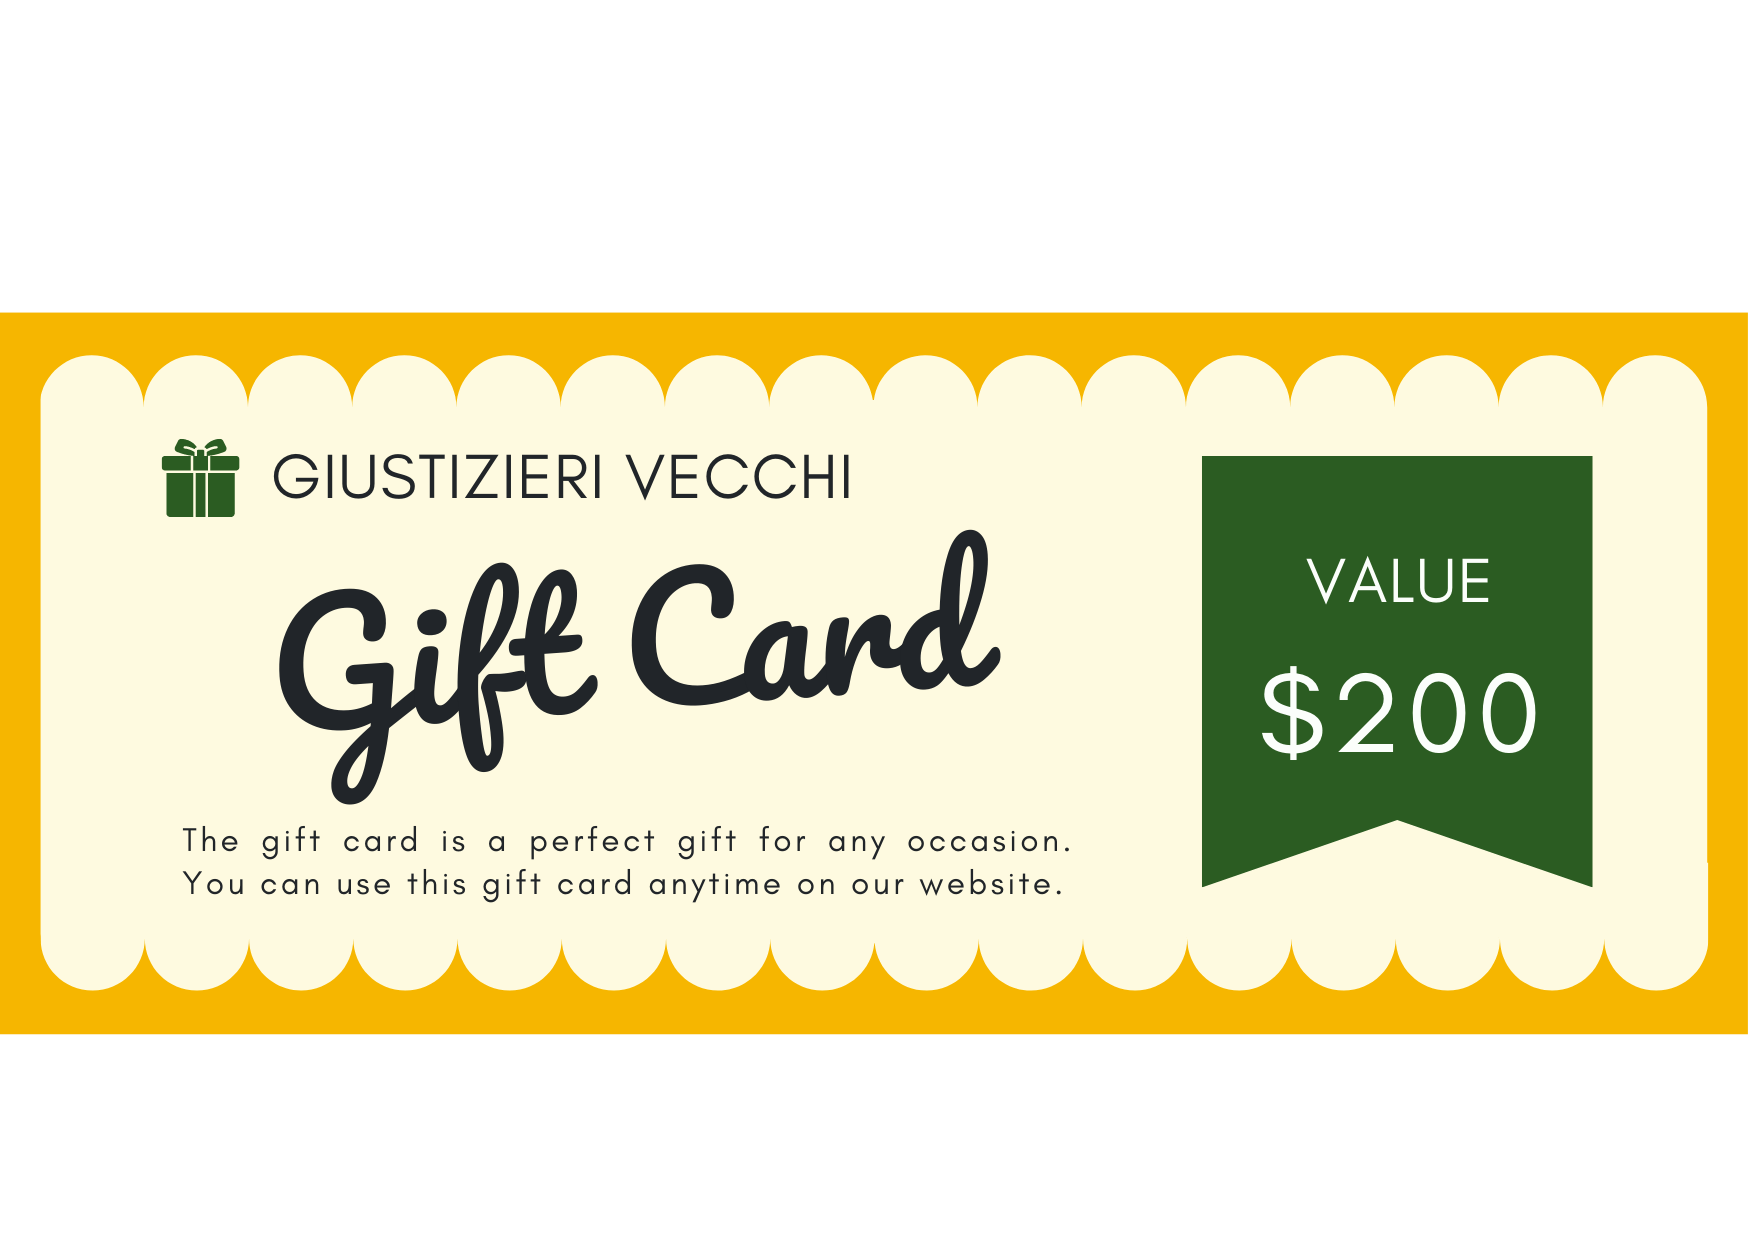 GIUSTIZIERI VECCHI $200.00 GVecchi Gift Card